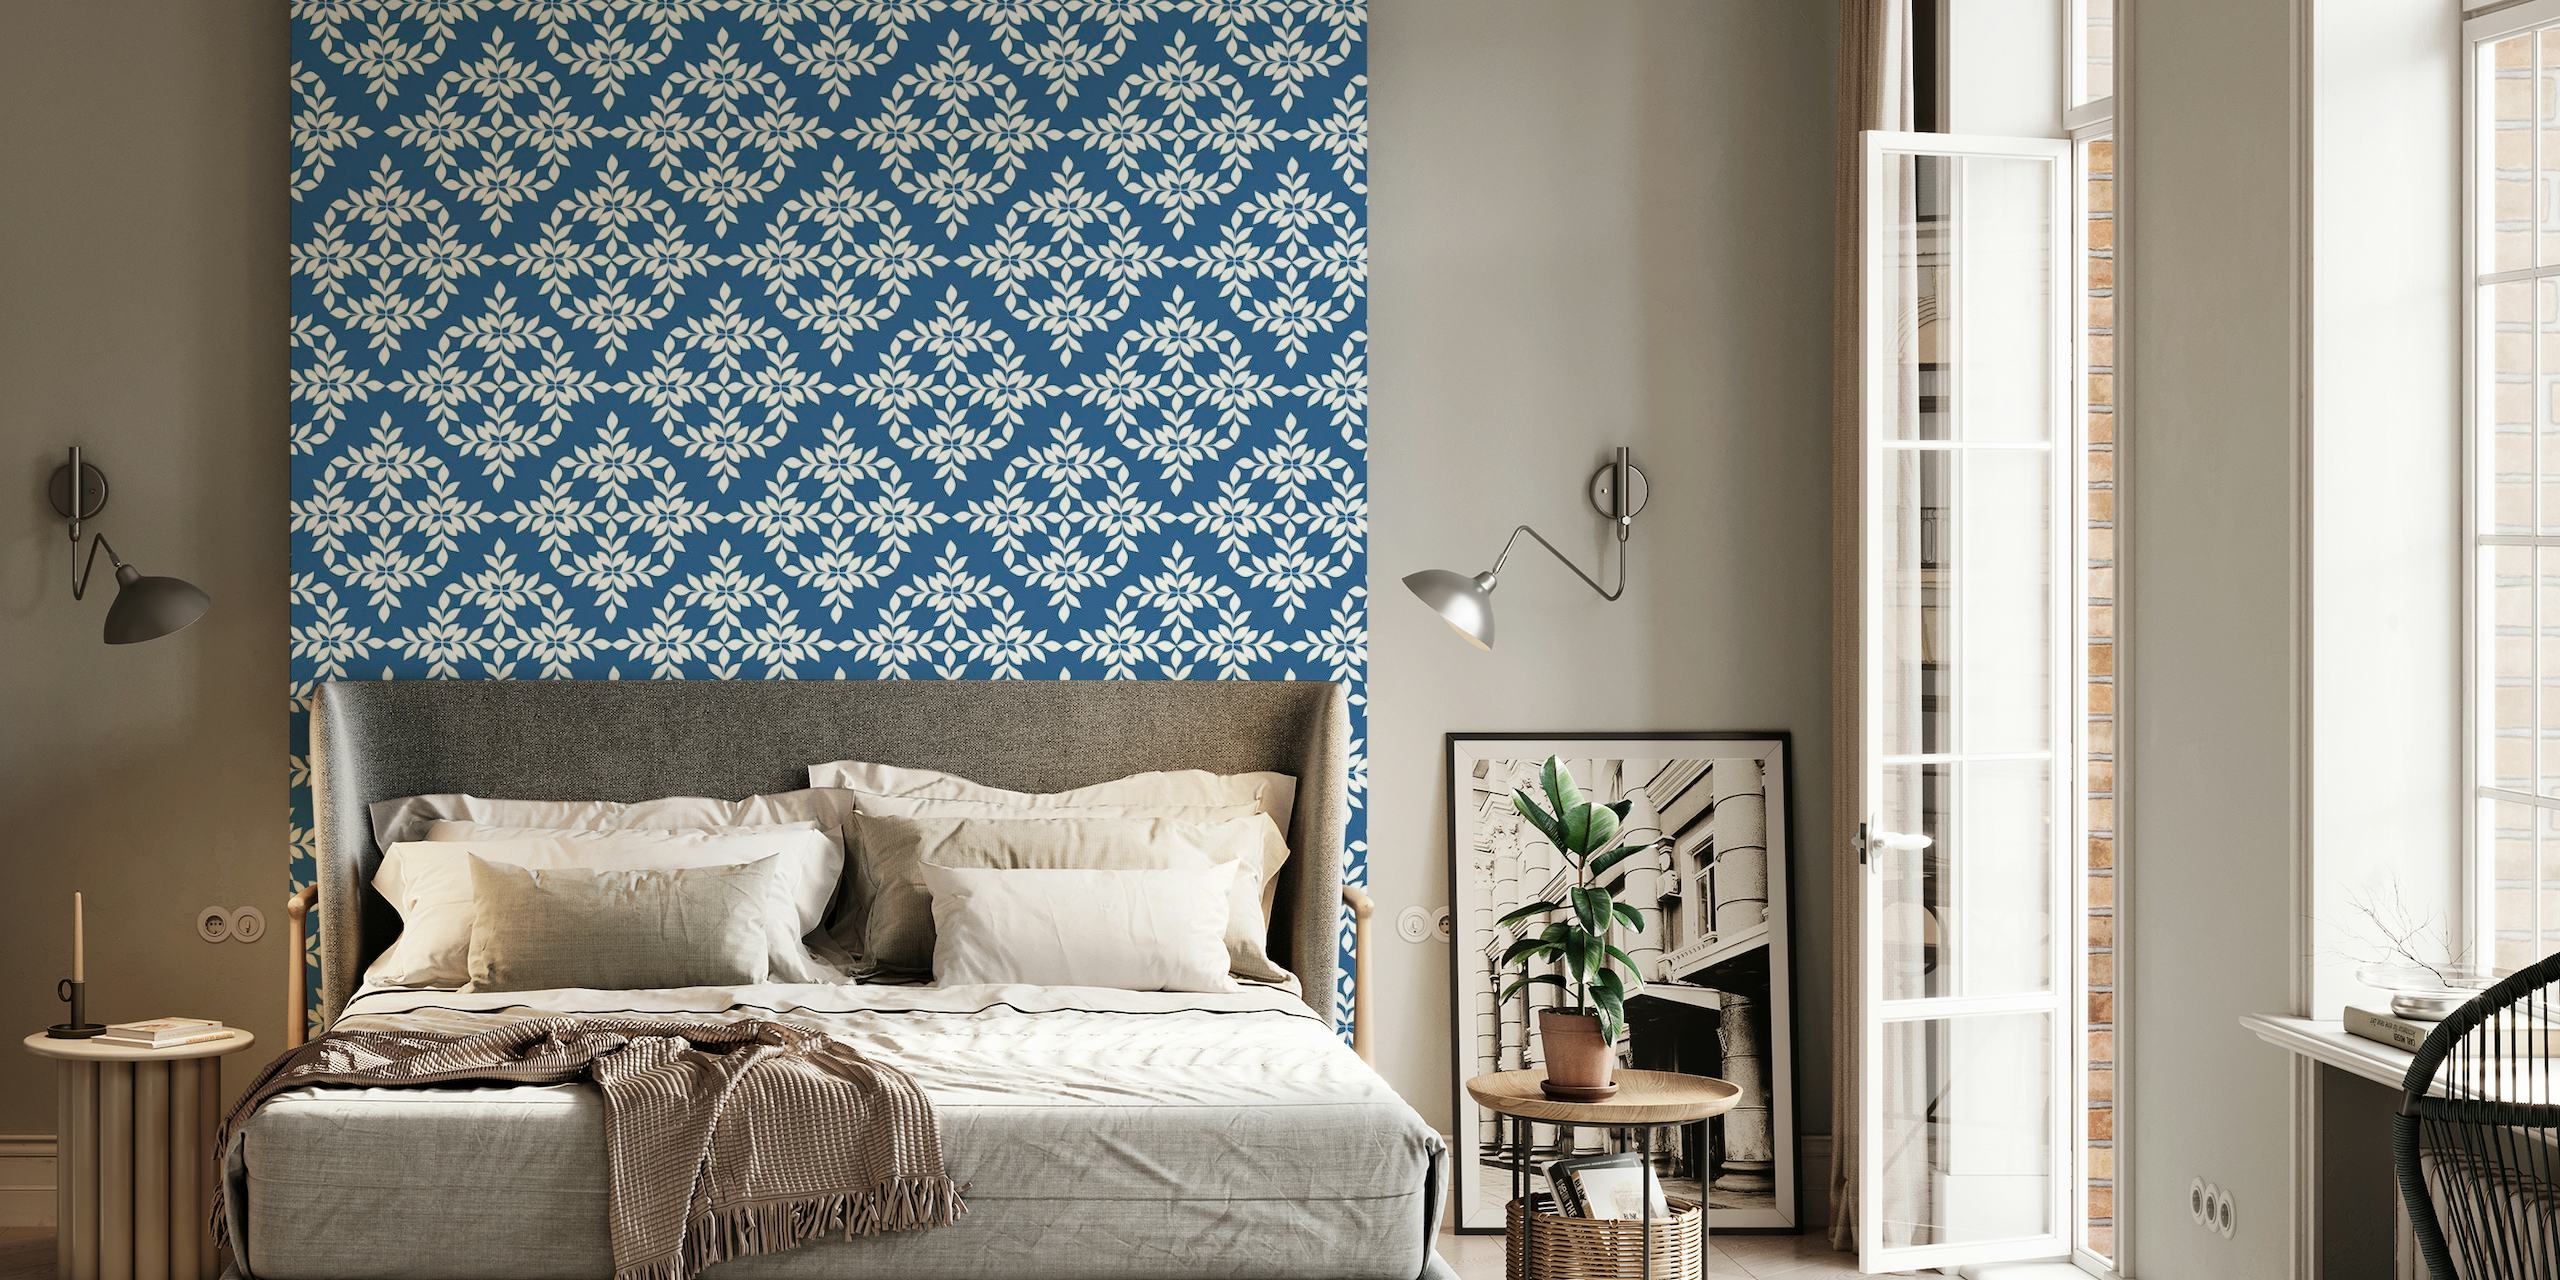 Indigo vægmaleri med blåt og hvidt mønster med indviklede designs